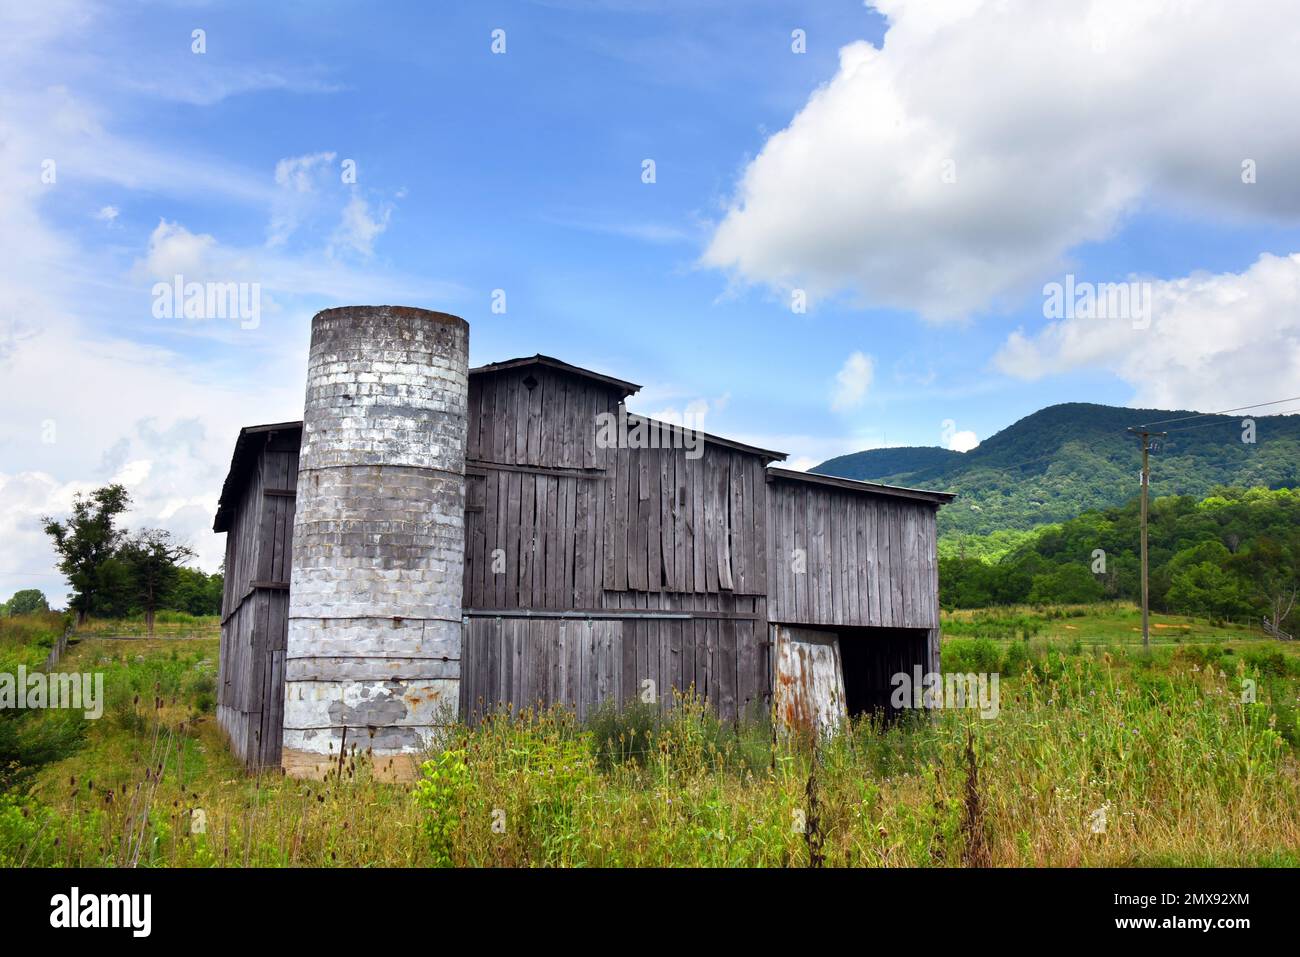 Rústico, desgastado, granero de madera tiene silo sin techo. Se asienta en un campo de hierba alta. Foto de stock